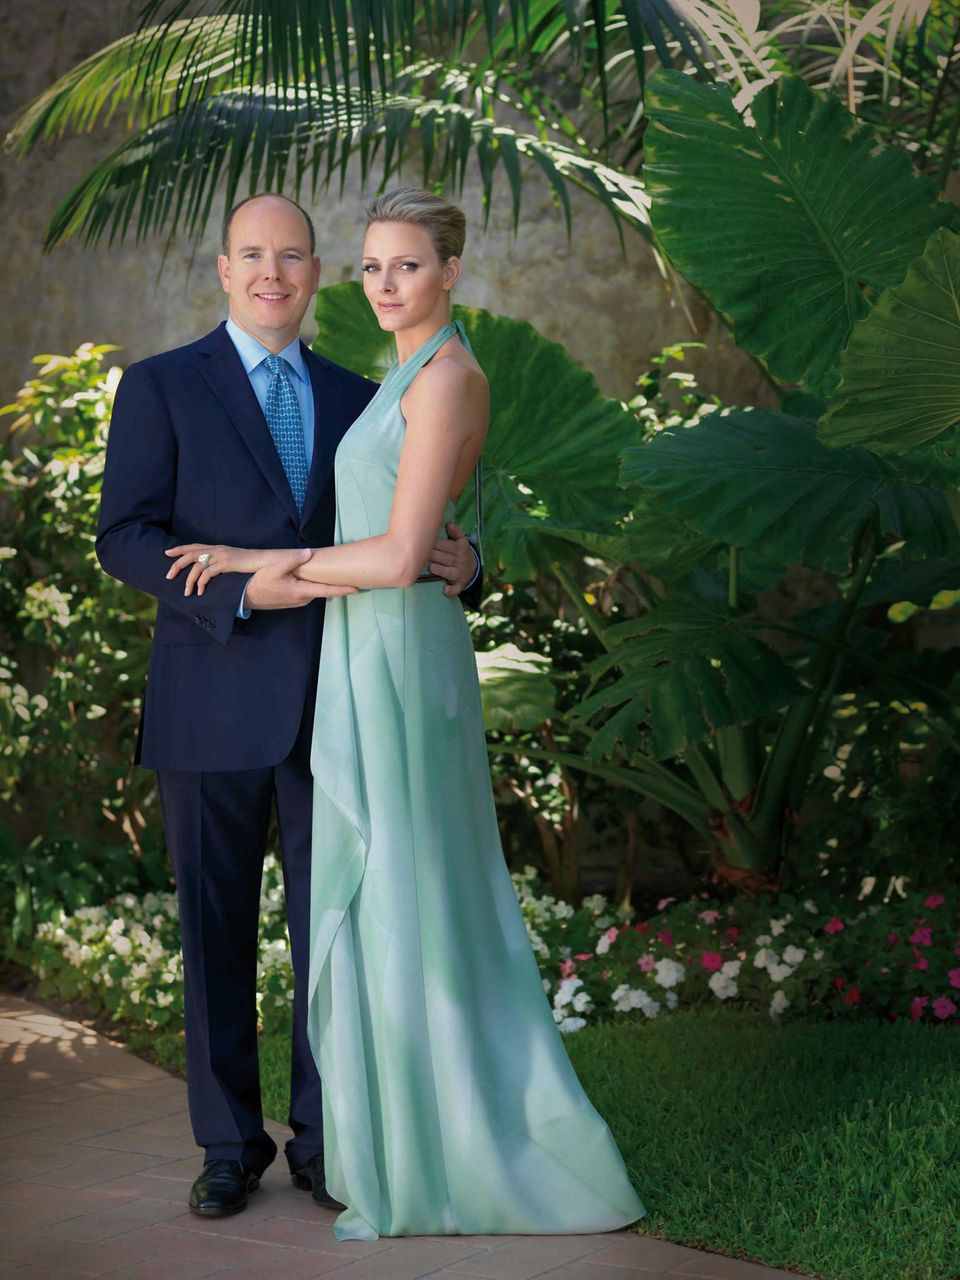 Mit diesem Foto gaben Fürst Albert und Charlene Wittstock am 23. Juni 2010 offiziell ihre Verlobung bekannt. 